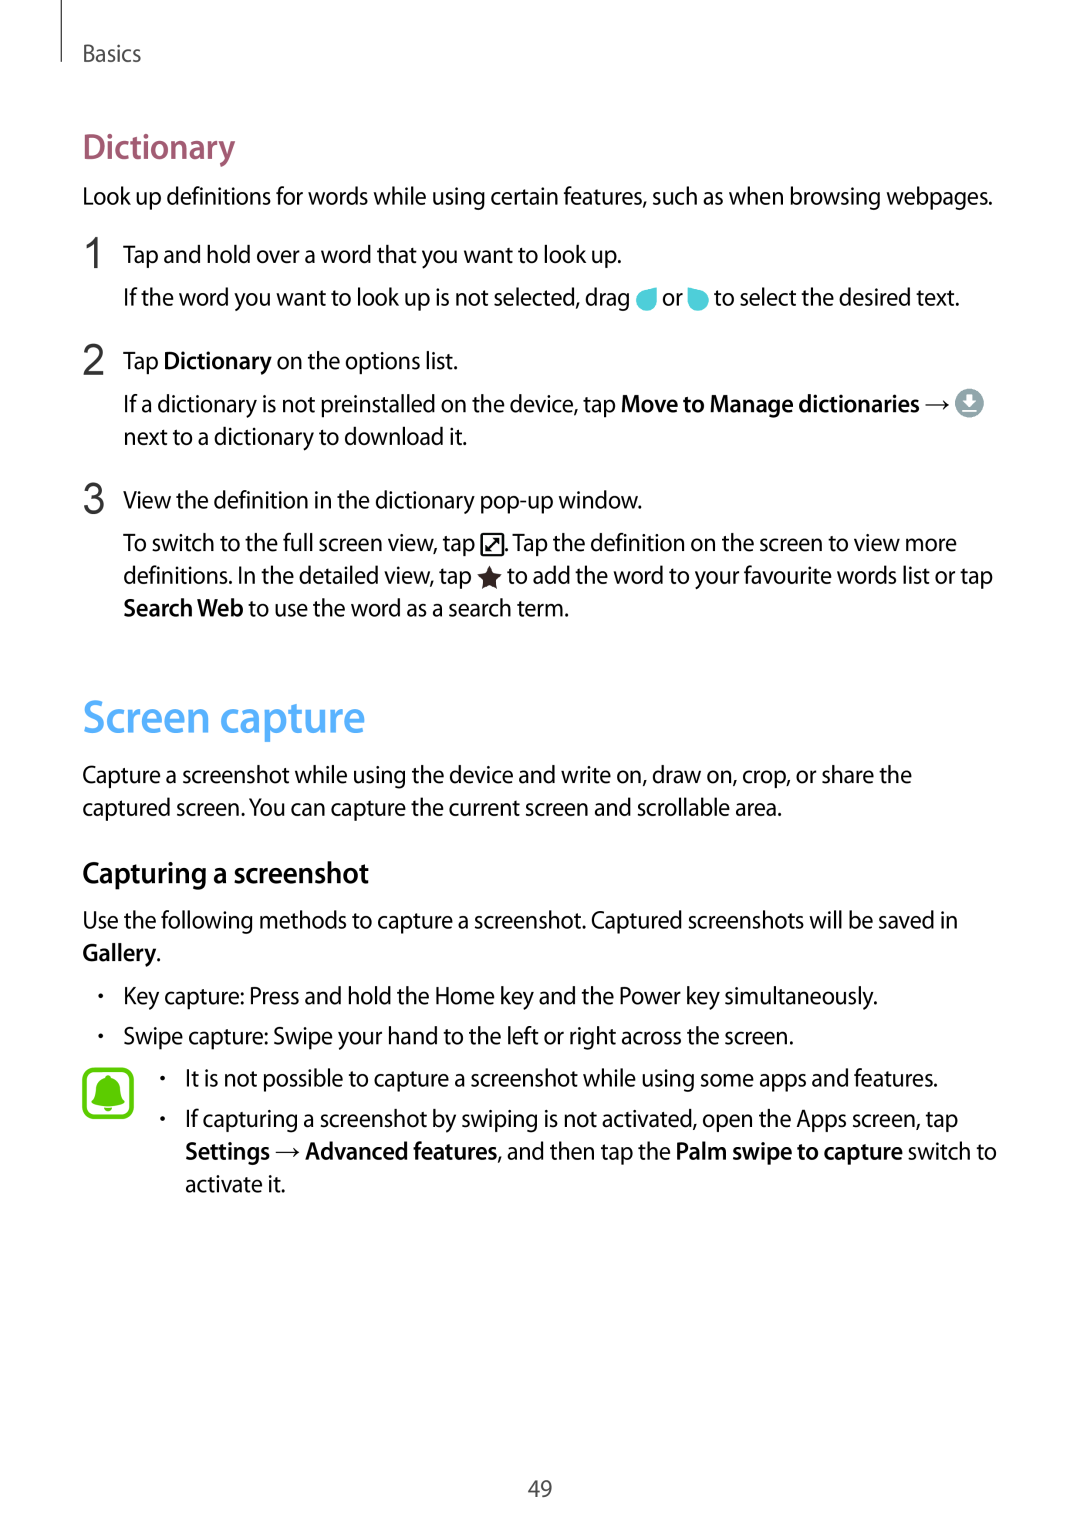 Samsung SM-G928FZSAPHE, SM-G925FZKADBT, SM-G925FZWEDBT manual Screen capture, Dictionary, Capturing a screenshot, Basics 